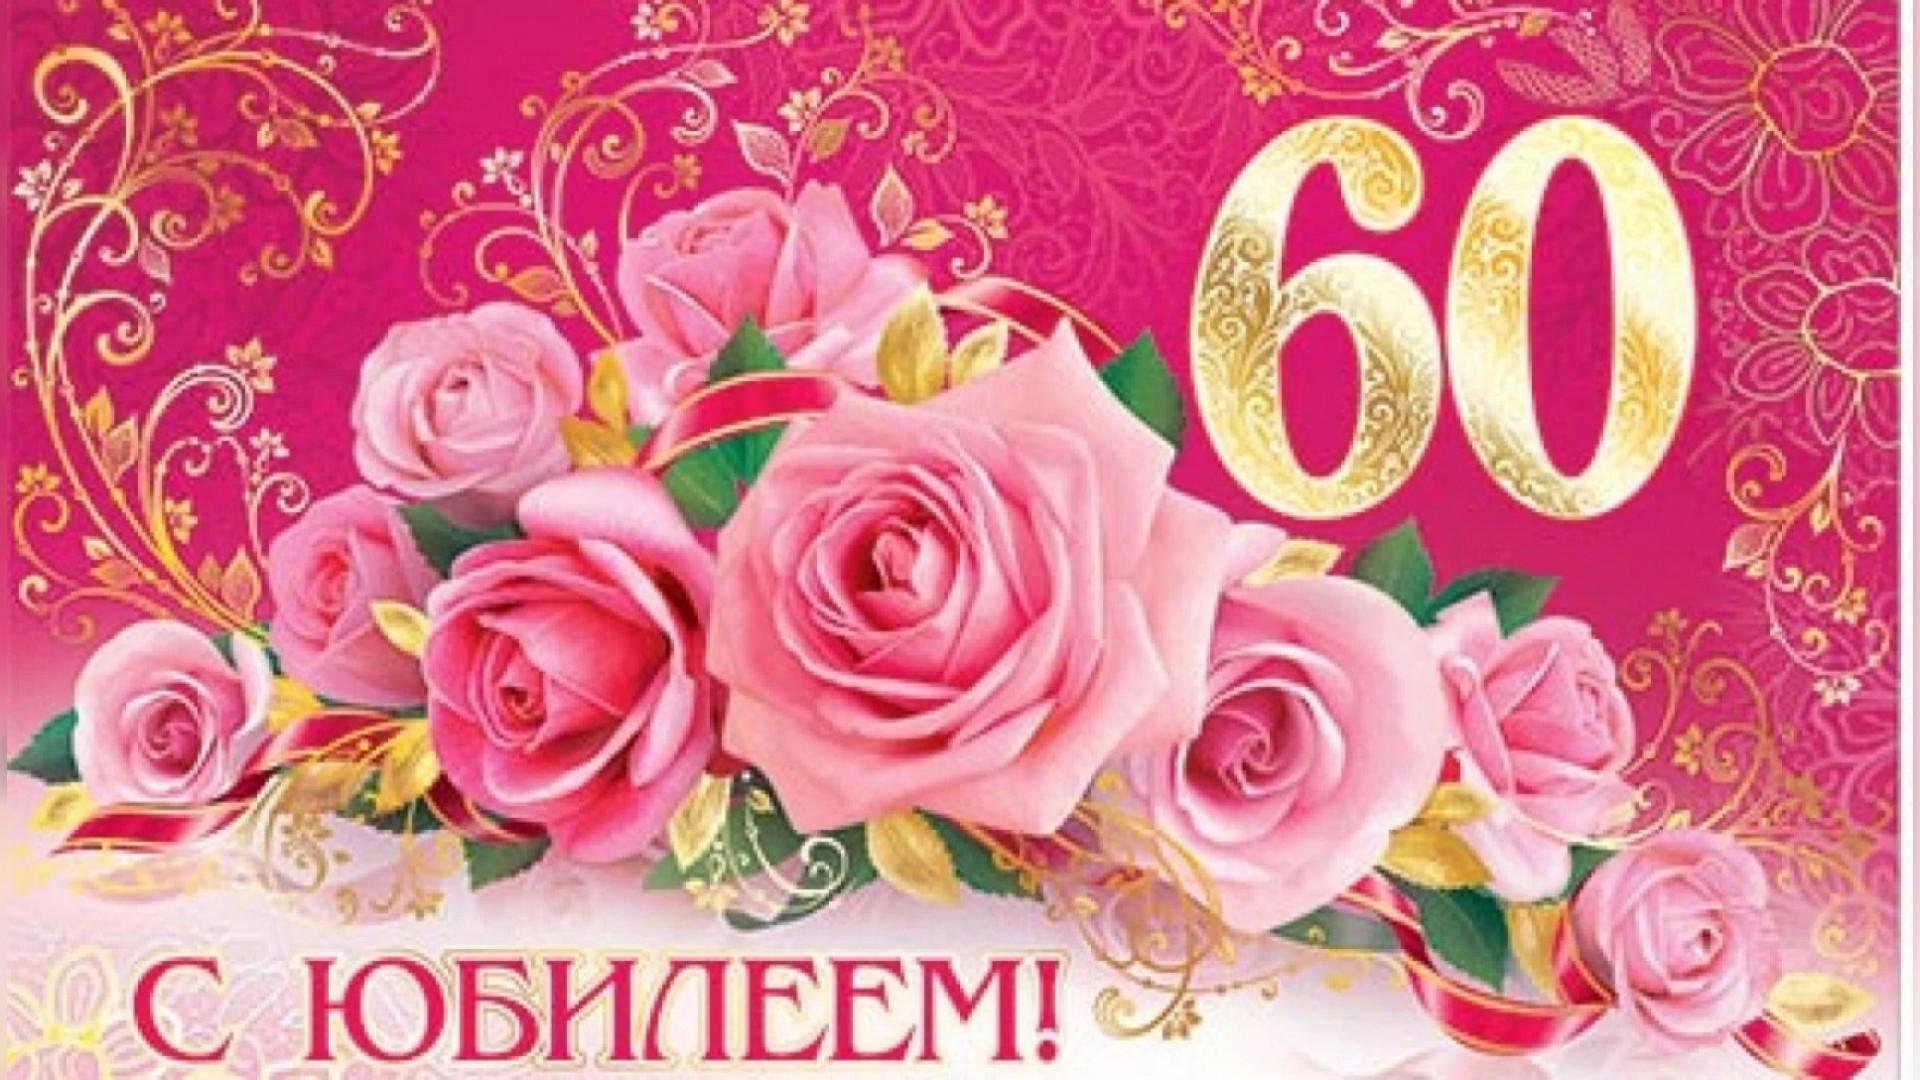 Поздравления на татарском женщине 60 лет. С юбилеем 60 лет. Открытка с юбилеем. С юбилеем 60 лет женщине. Открытка с юбилеем 60 лет женщине.